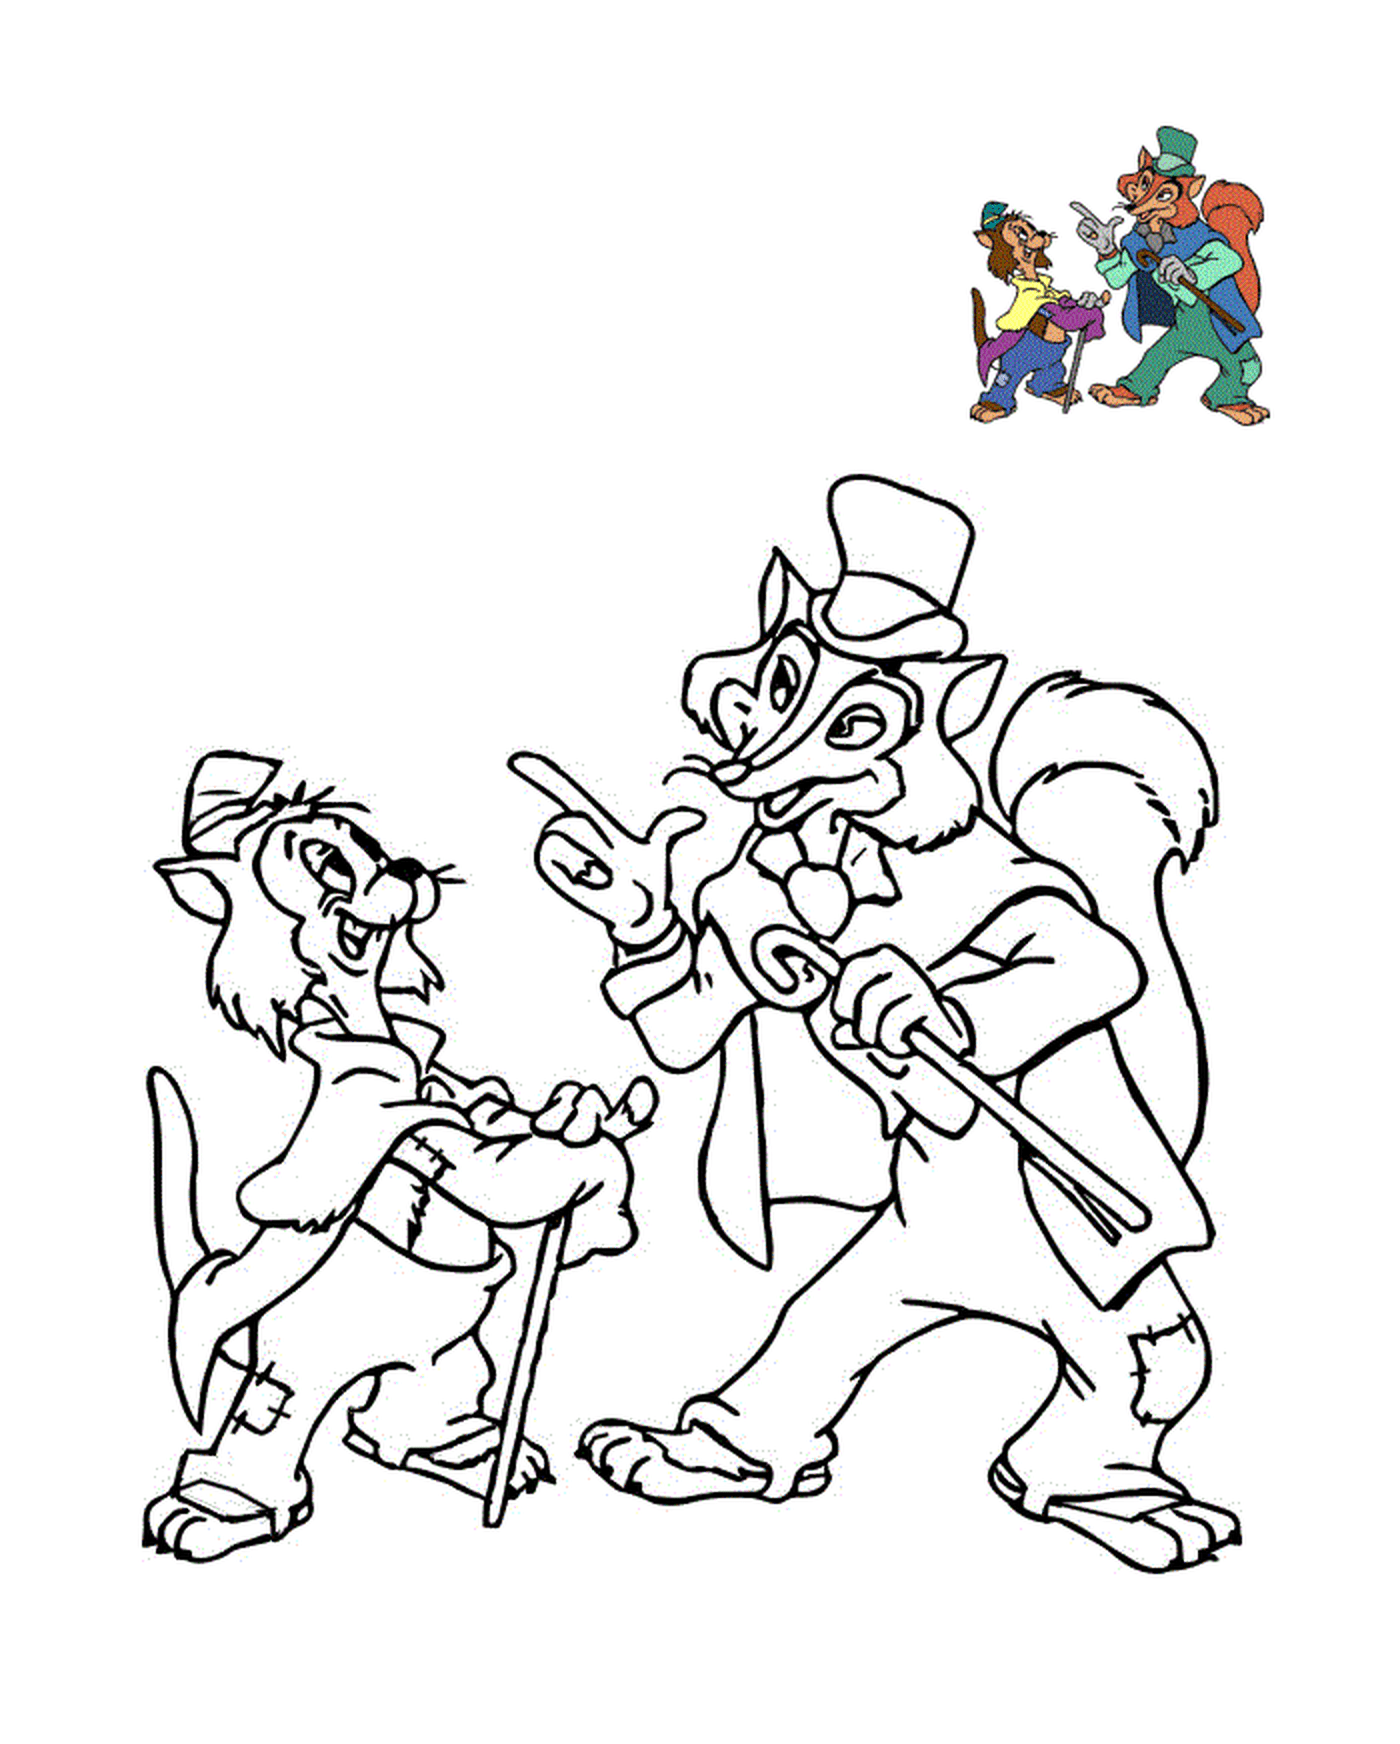  Gideon e Grand Coquin, Pinocchio 1940 